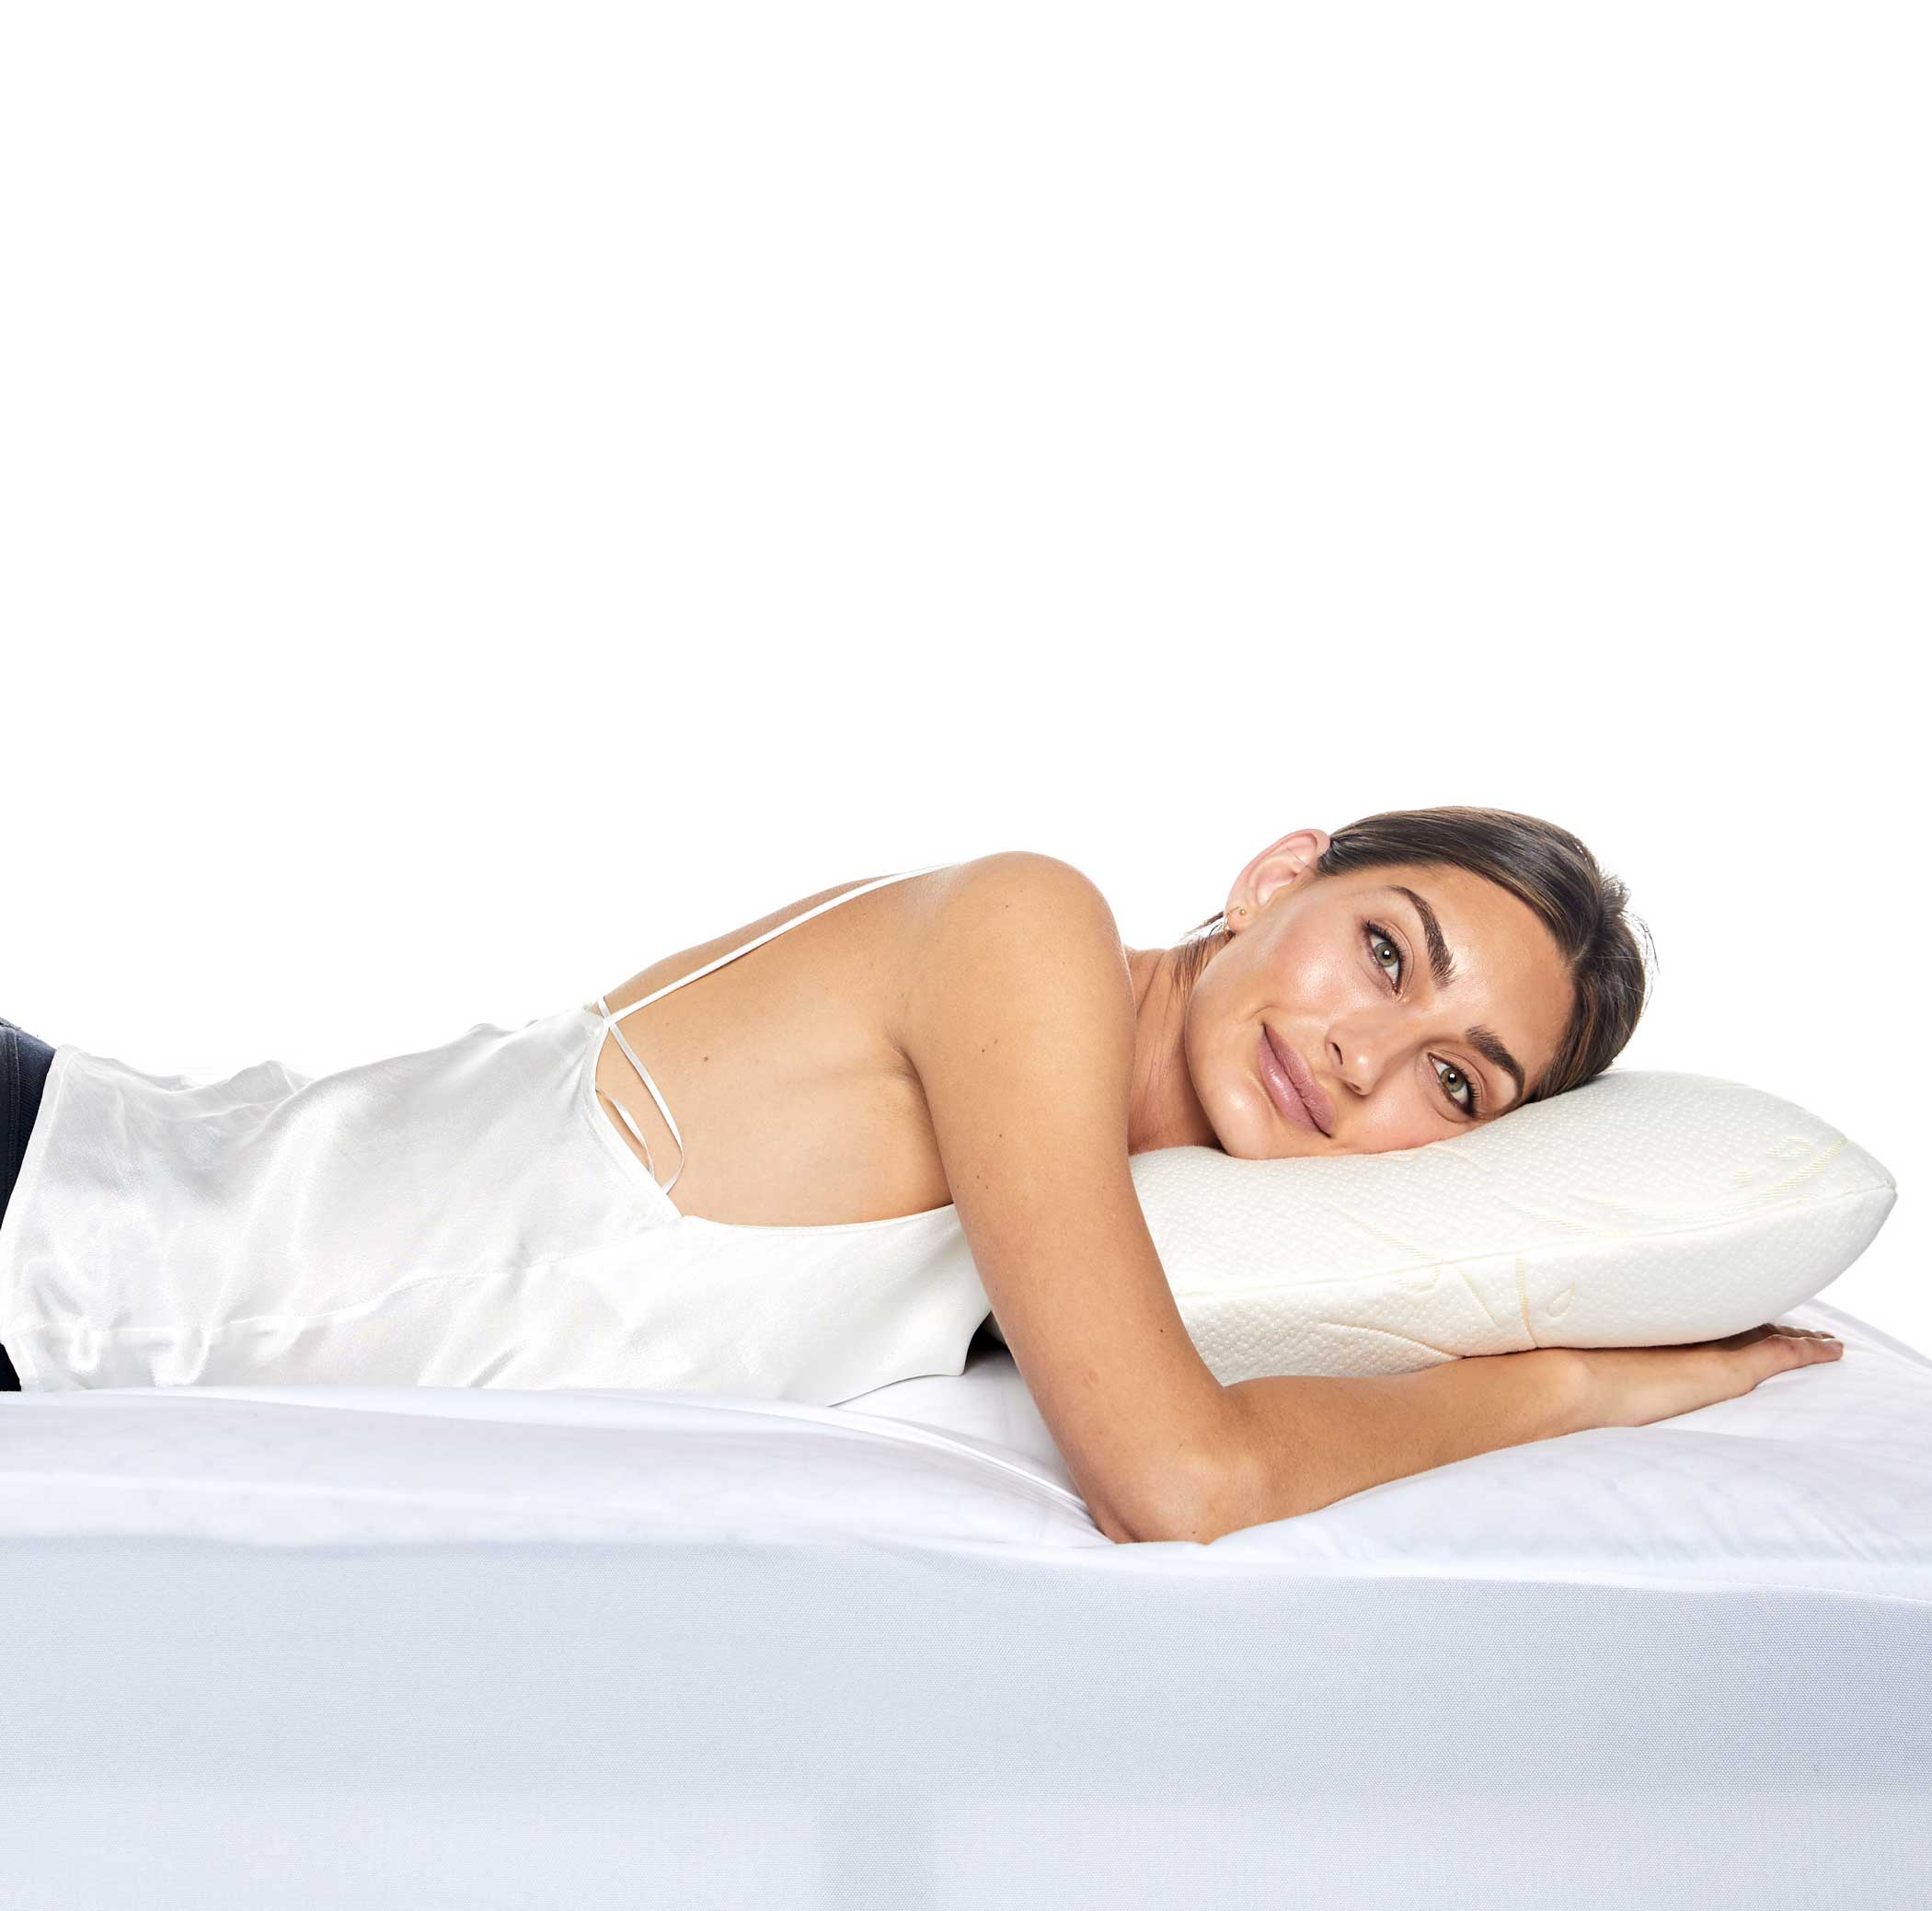 Flexi Pillow Talalay Bamboo Classic Pillow - Mattress & Pillow SciencePillows